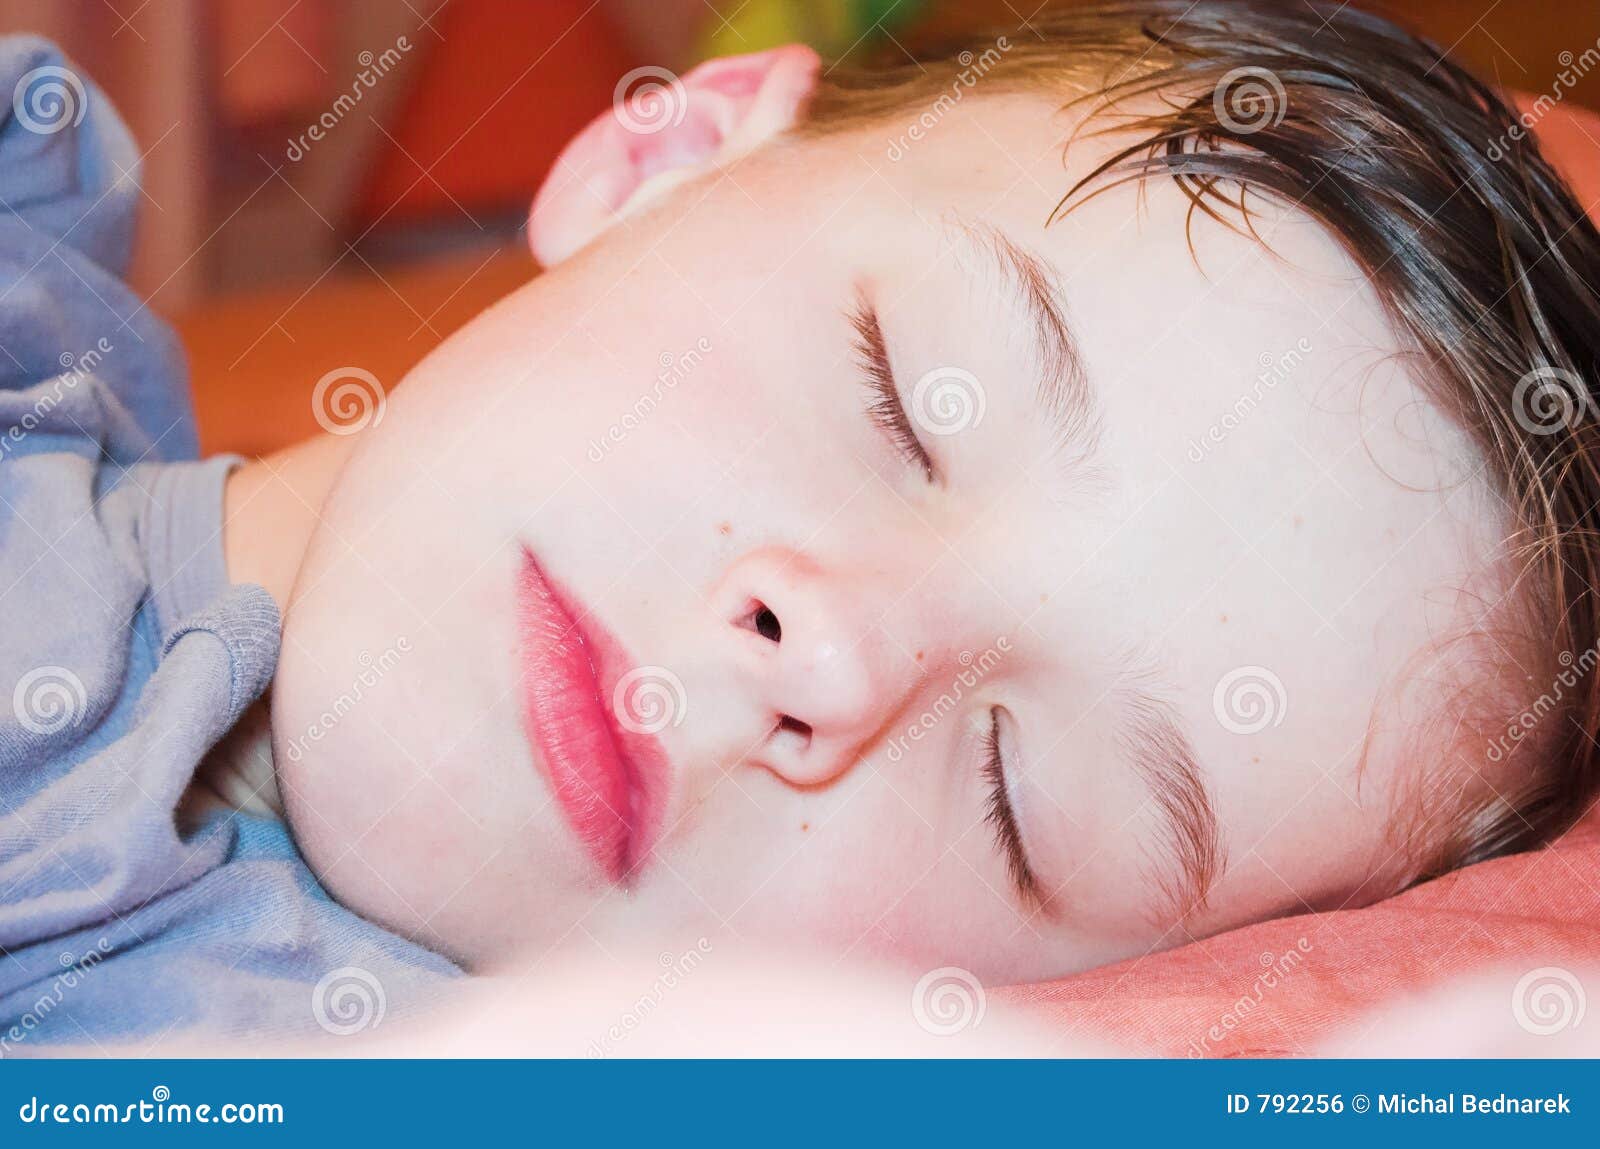 Сильно потеет голова во сне у ребенка. Мокрые сны у мальчиков. Ребёнок сильно потеет во сне.